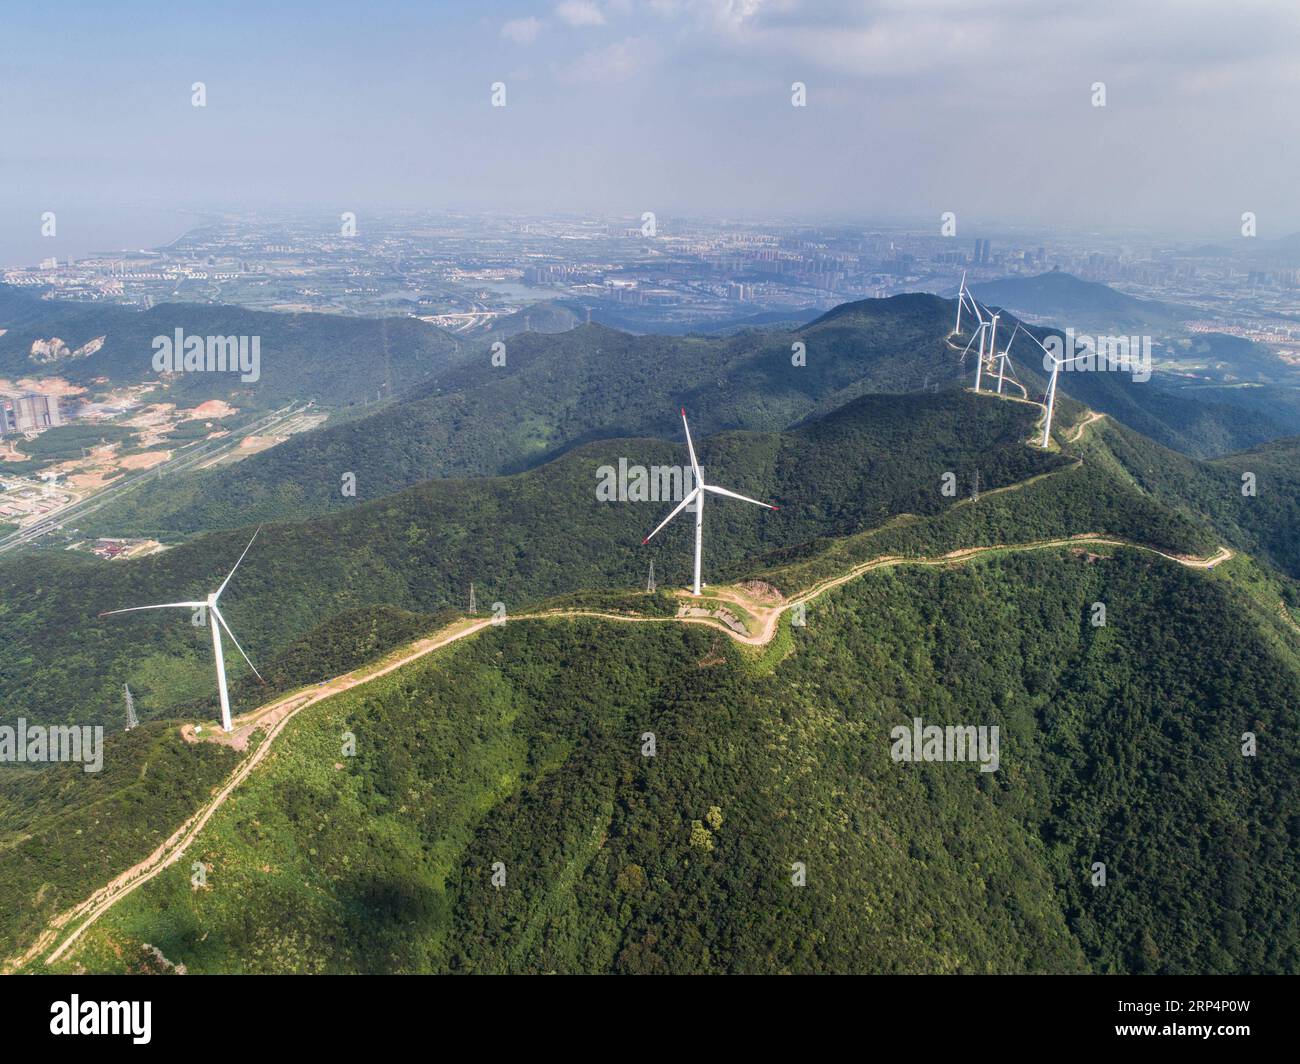 (181115) -- PEKING, 15. November 2018 (Xinhua) -- Luftaufnahme vom 23. August 2018 zeigt den Bianshan Windpark im Changxing County in der ostchinesischen Provinz Zhejiang. Nach Angaben des National Bureau of Statistics stieg Chinas Stromerzeugung in den ersten zehn Monaten des Jahres 2018 um 7,2 Prozent gegenüber dem Vorjahr. Allein im Oktober erzeugte China 533 Milliarden Kilowattstunden (kWh) Strom, ein Anstieg von 4,8 Prozent im Vergleich zum Vorjahr, schneller als das Wachstum von 4,6 Prozent im September. Die durchschnittliche tägliche Stromerzeugung erreichte 17,2 Milliarden kWh und ging von 18,3 Milliarden kWh im September zurück. China verzeichnete eine schnellere Wachstumsrate von Hy Stockfoto